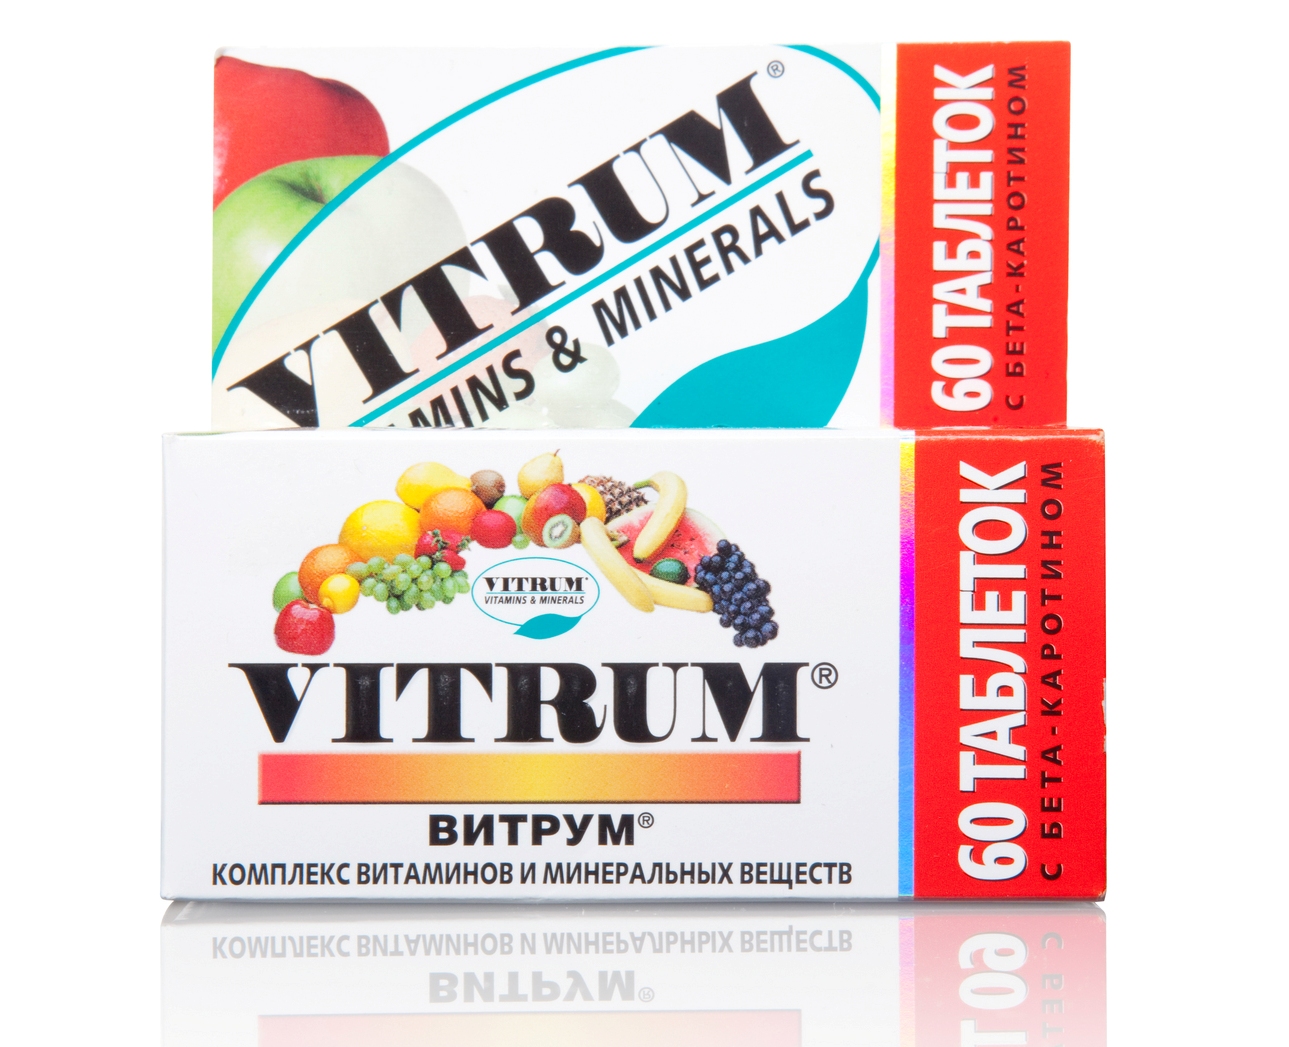 Витамины для мужчин перед. Витаминный комплекс. Комплексные витамины. Комплекс витаминов для мужчин. Витрум мужские витамины.